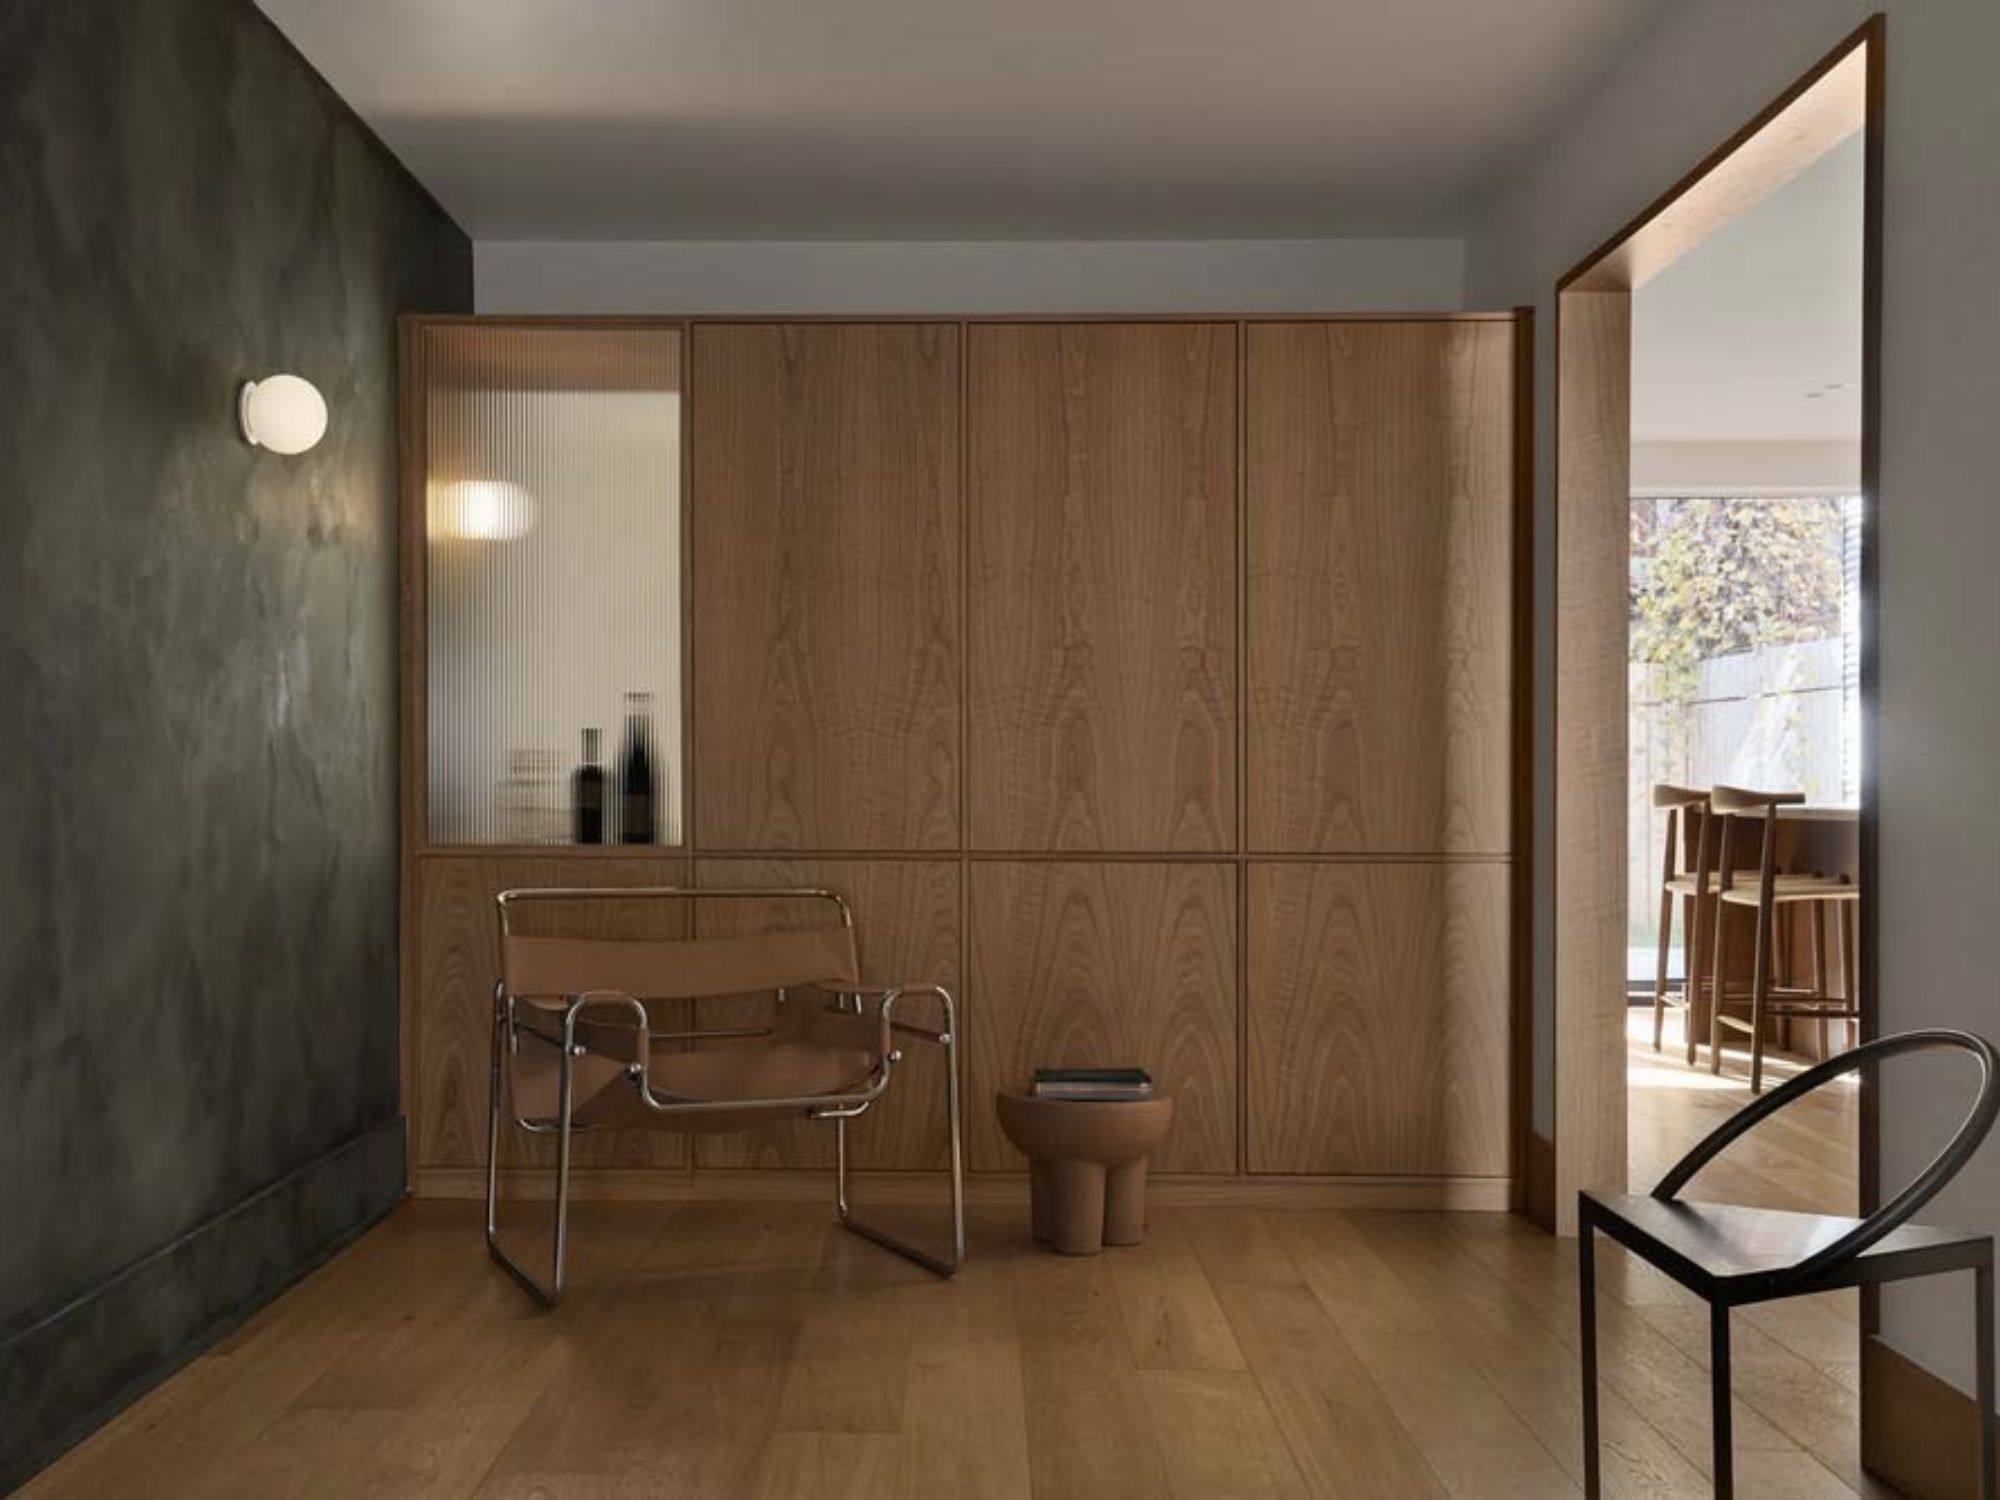 Binnenkijker: een minimalistisch interieur met hout in de hoofdrol